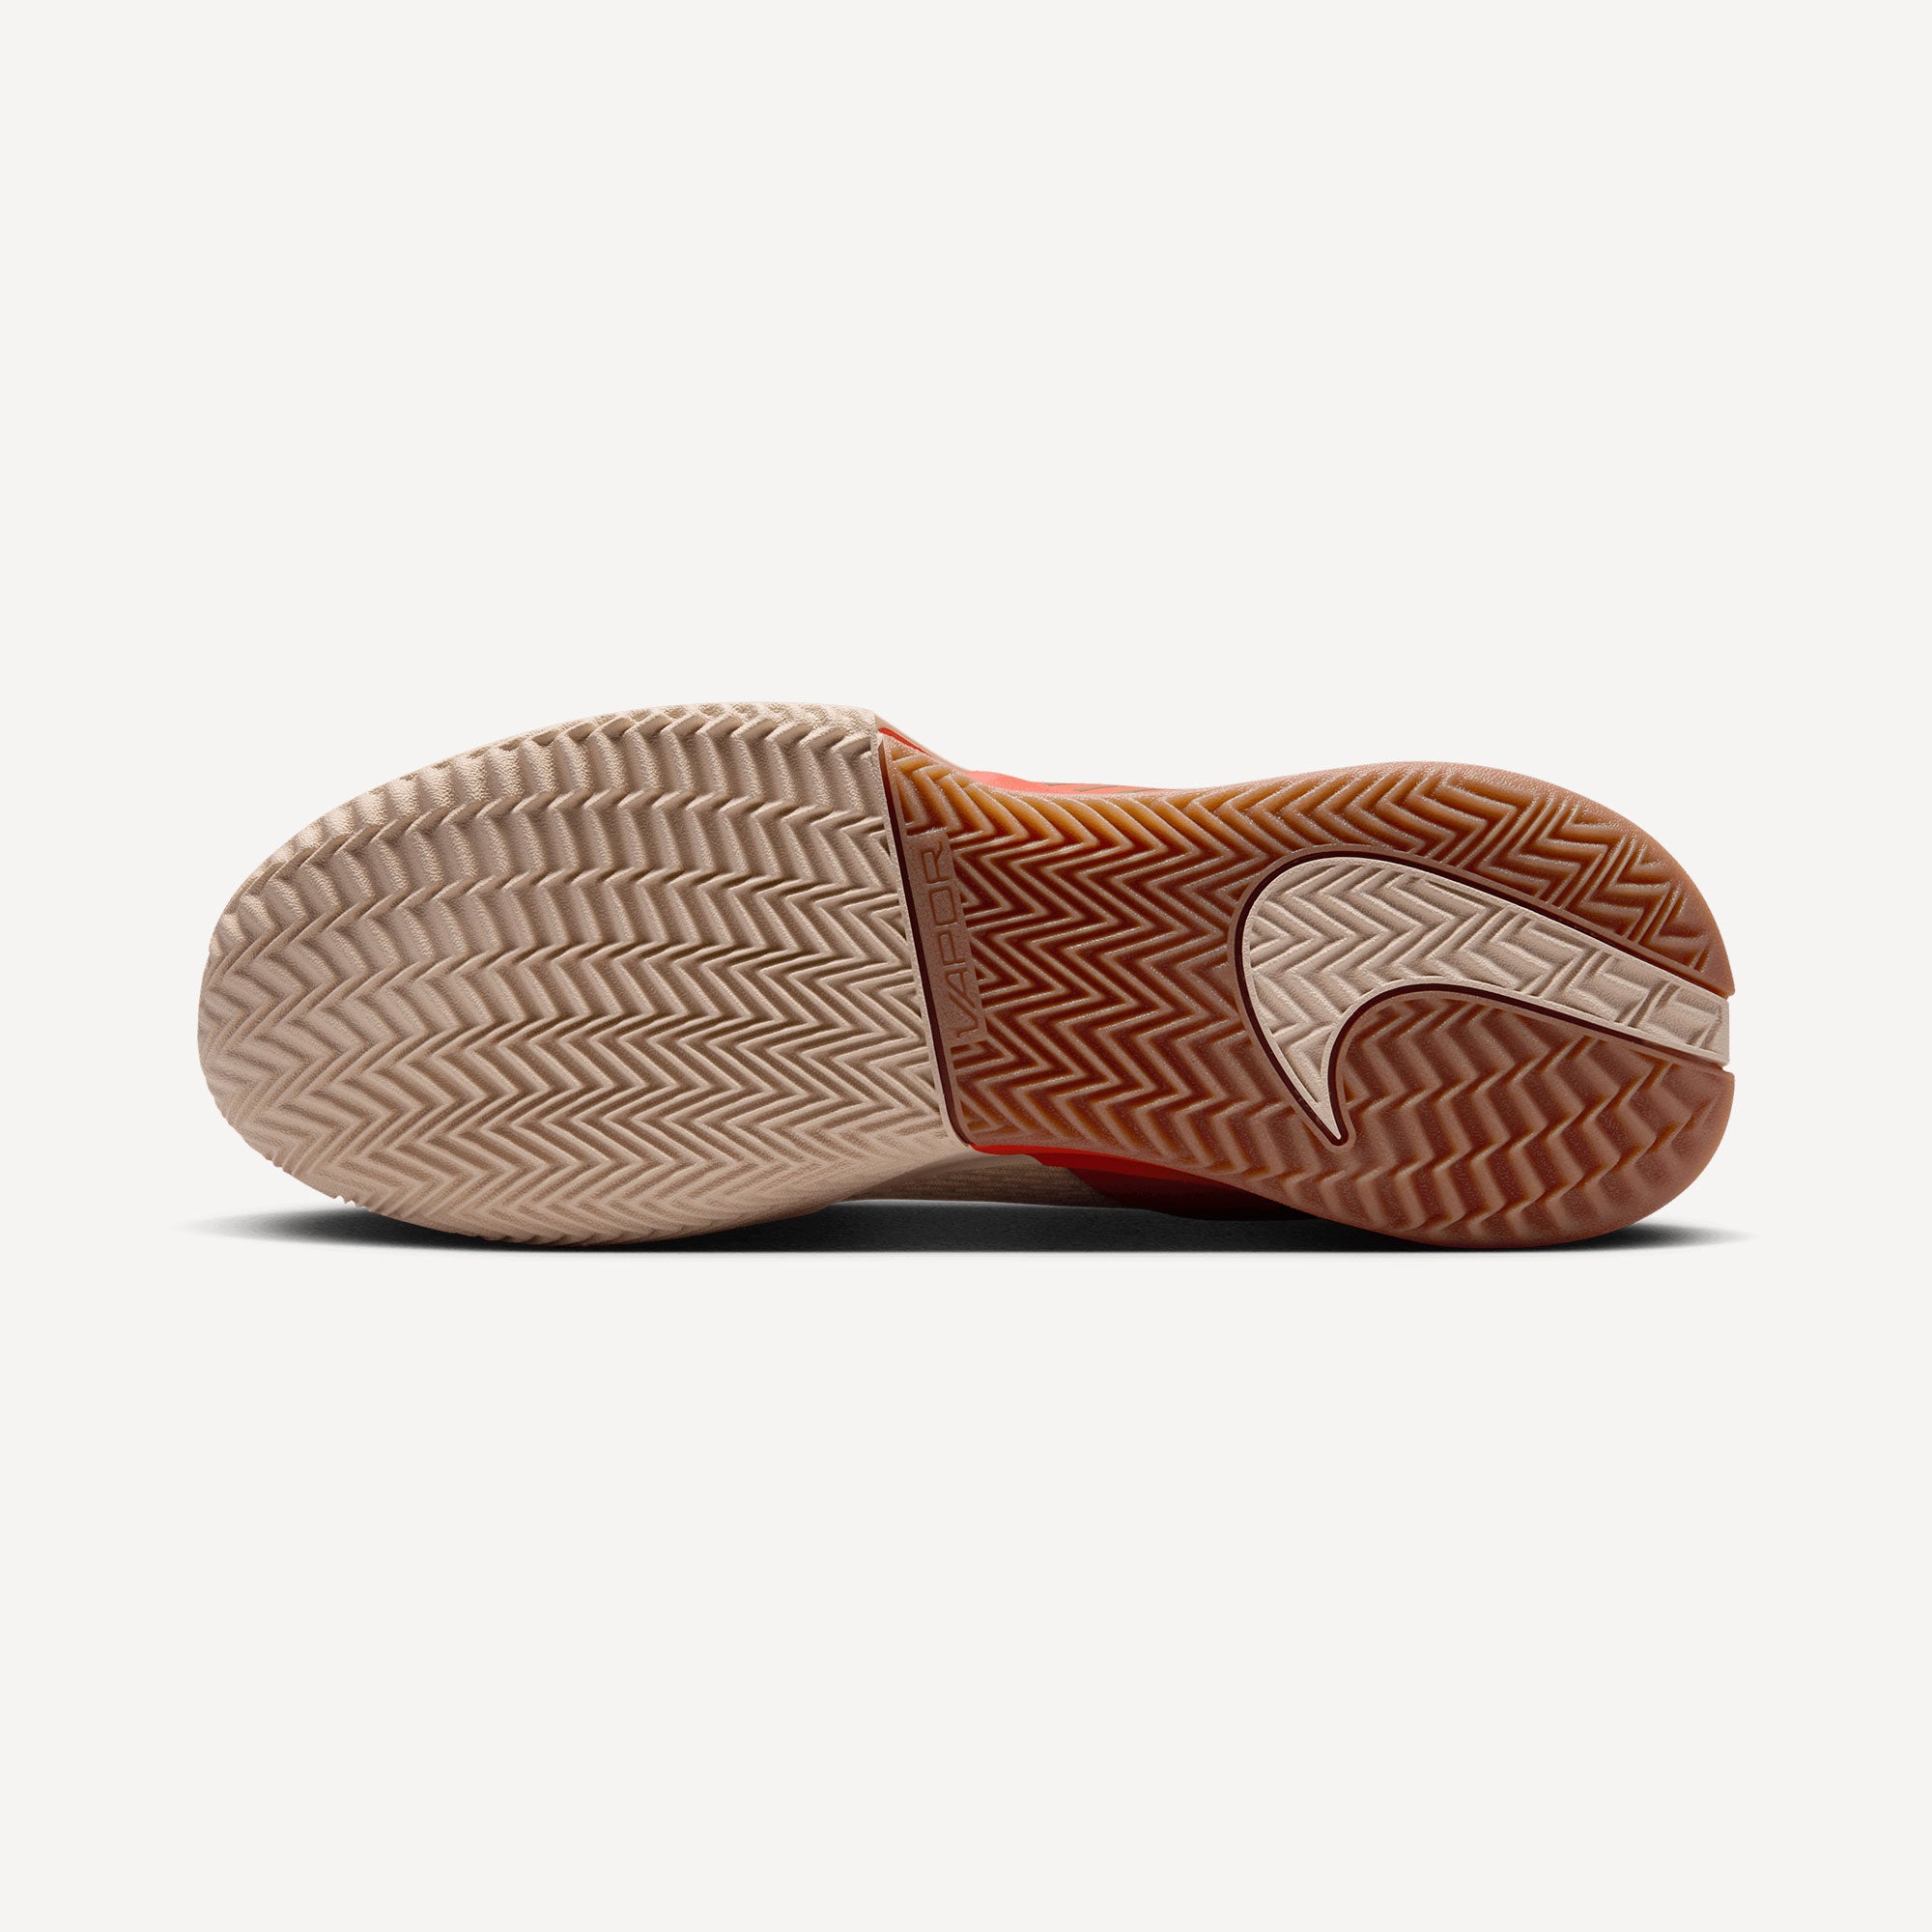 NikeCourt Air Zoom Vapor Pro 2 Premium Women's Clay Court Tennis Shoes - Sand (2)